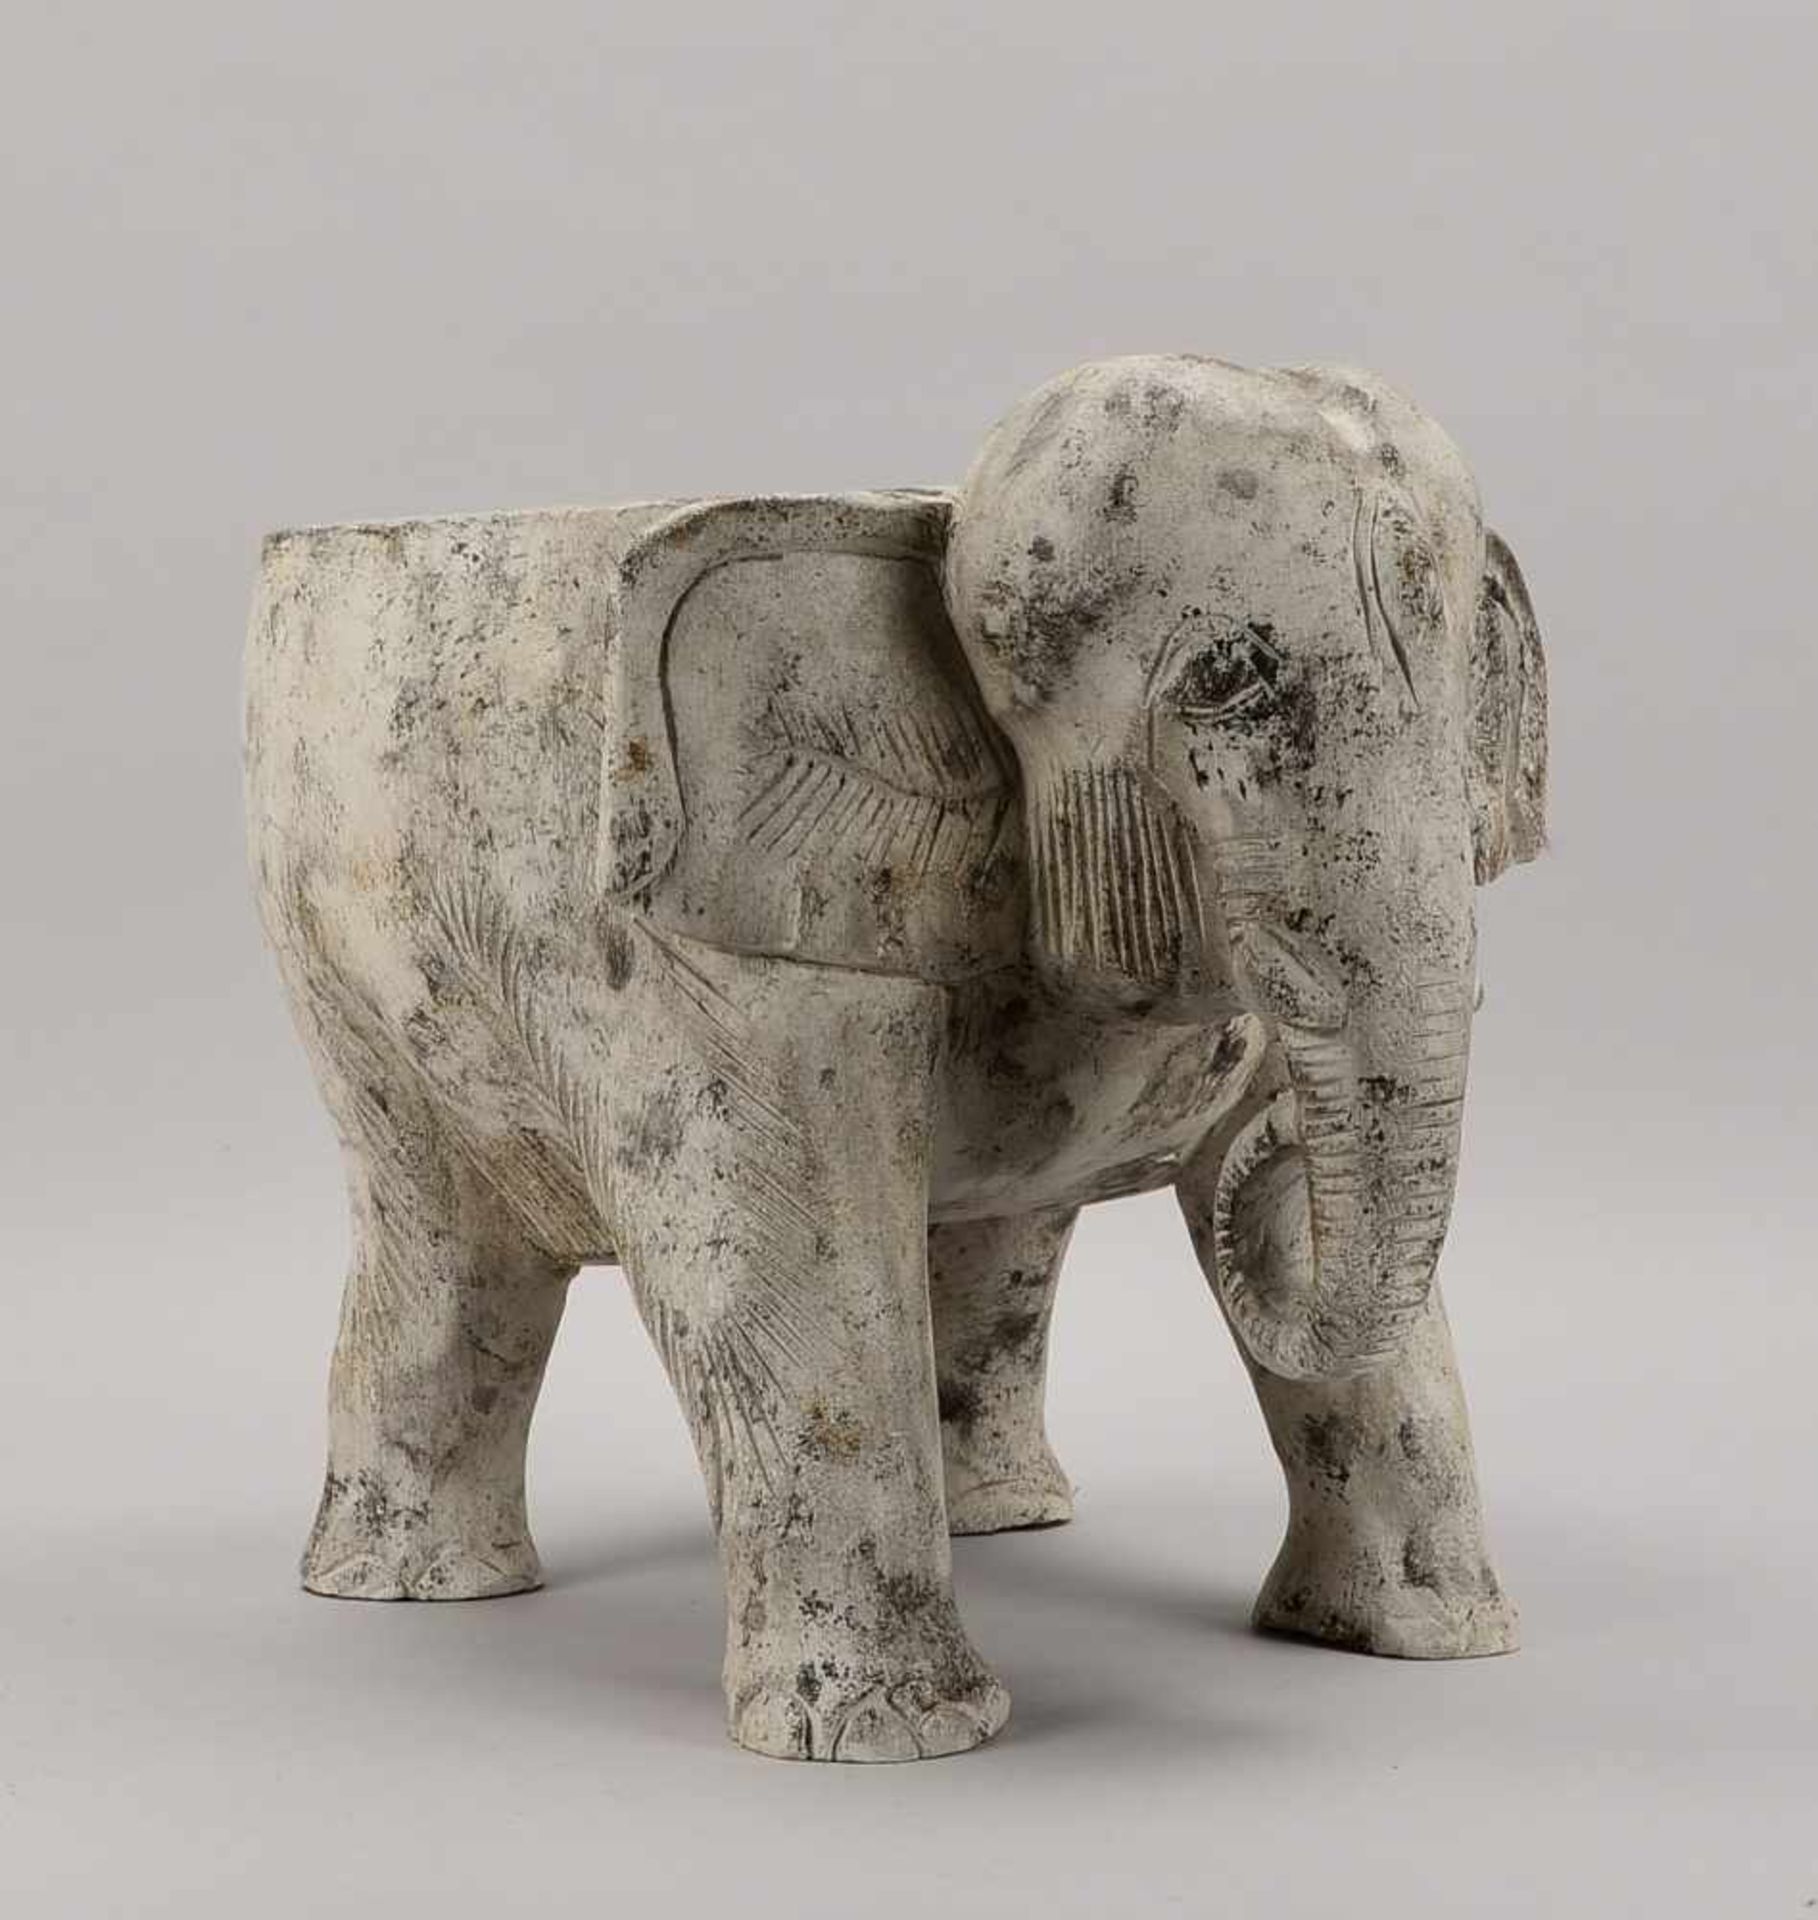 Blumenhocker, 'Elefant', Holz weiß gefasst; Maße 41 x 44 x 37 cm